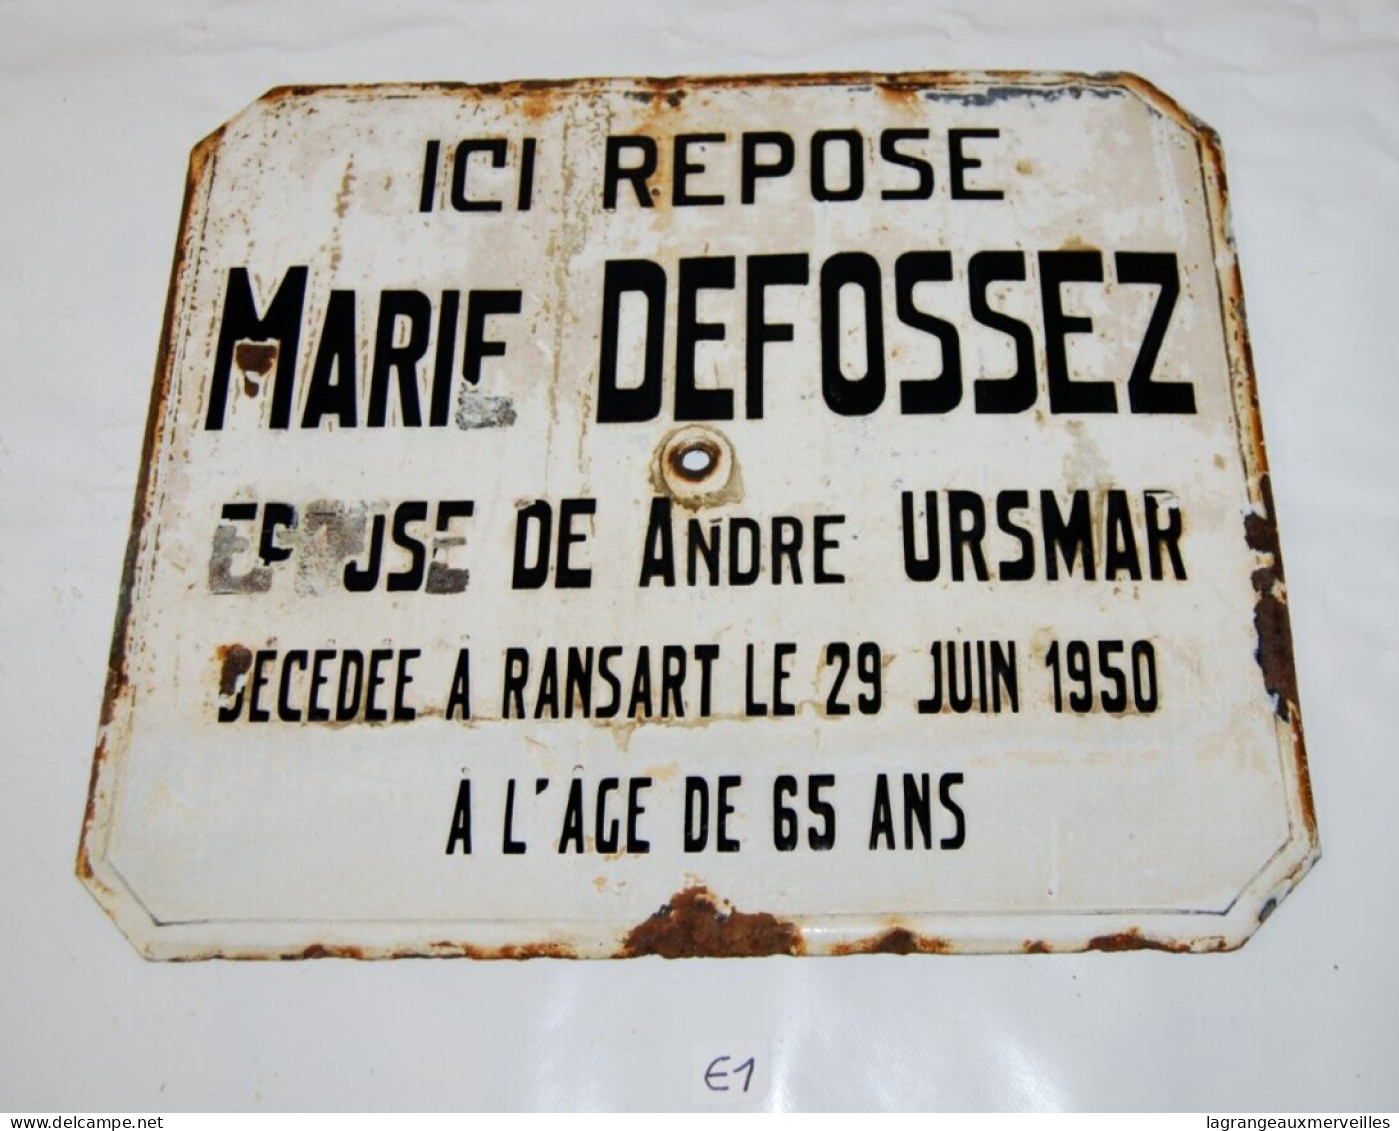 E1 Ancienne plaque émaillée mortuaire - Ransart Charleroi Defossez